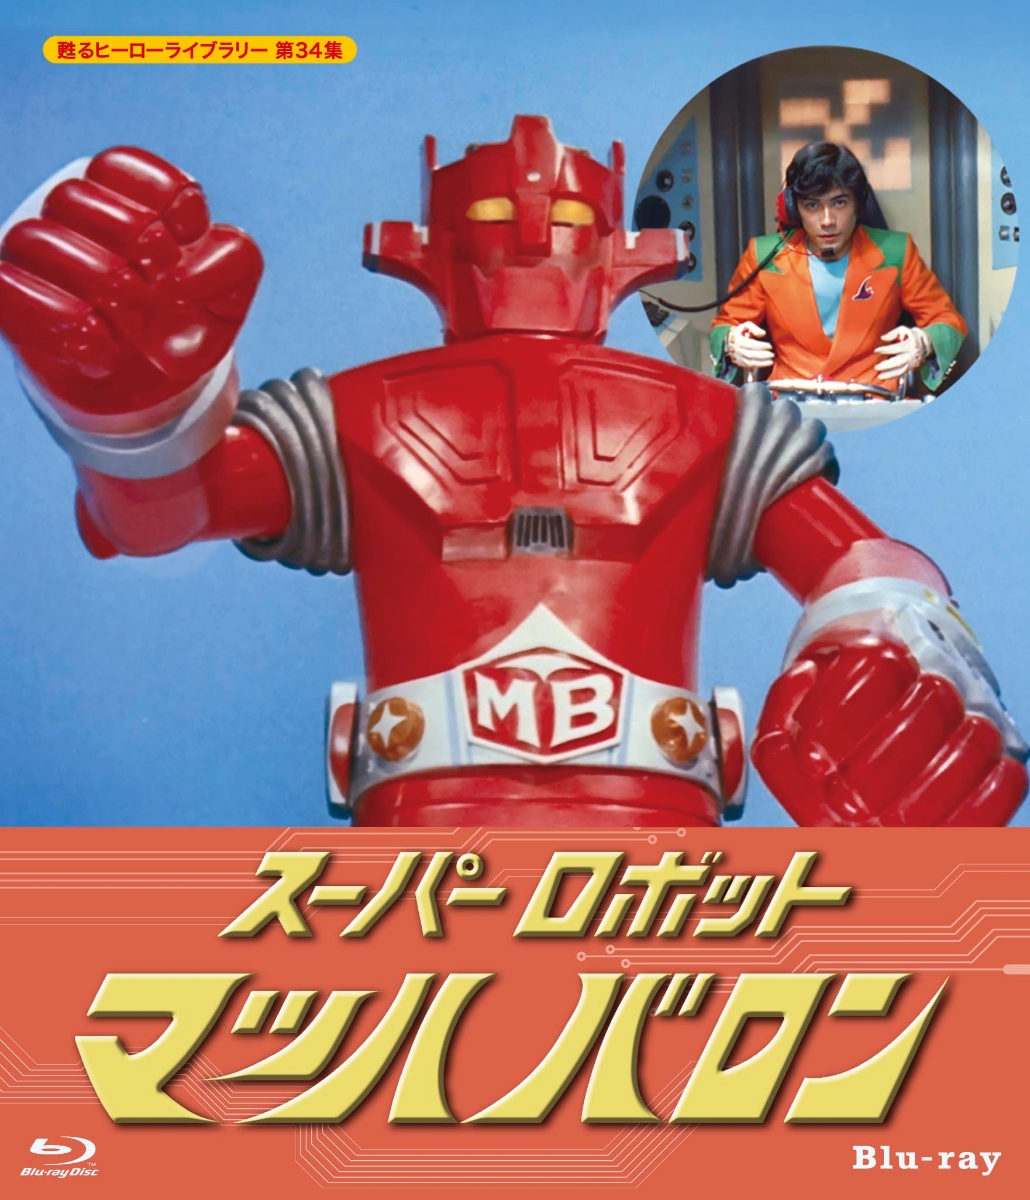 スーパーロボット マッハバロン【甦るヒーローライブラリー 第34集】【Blu-ray】 [ 下塚誠 ]画像